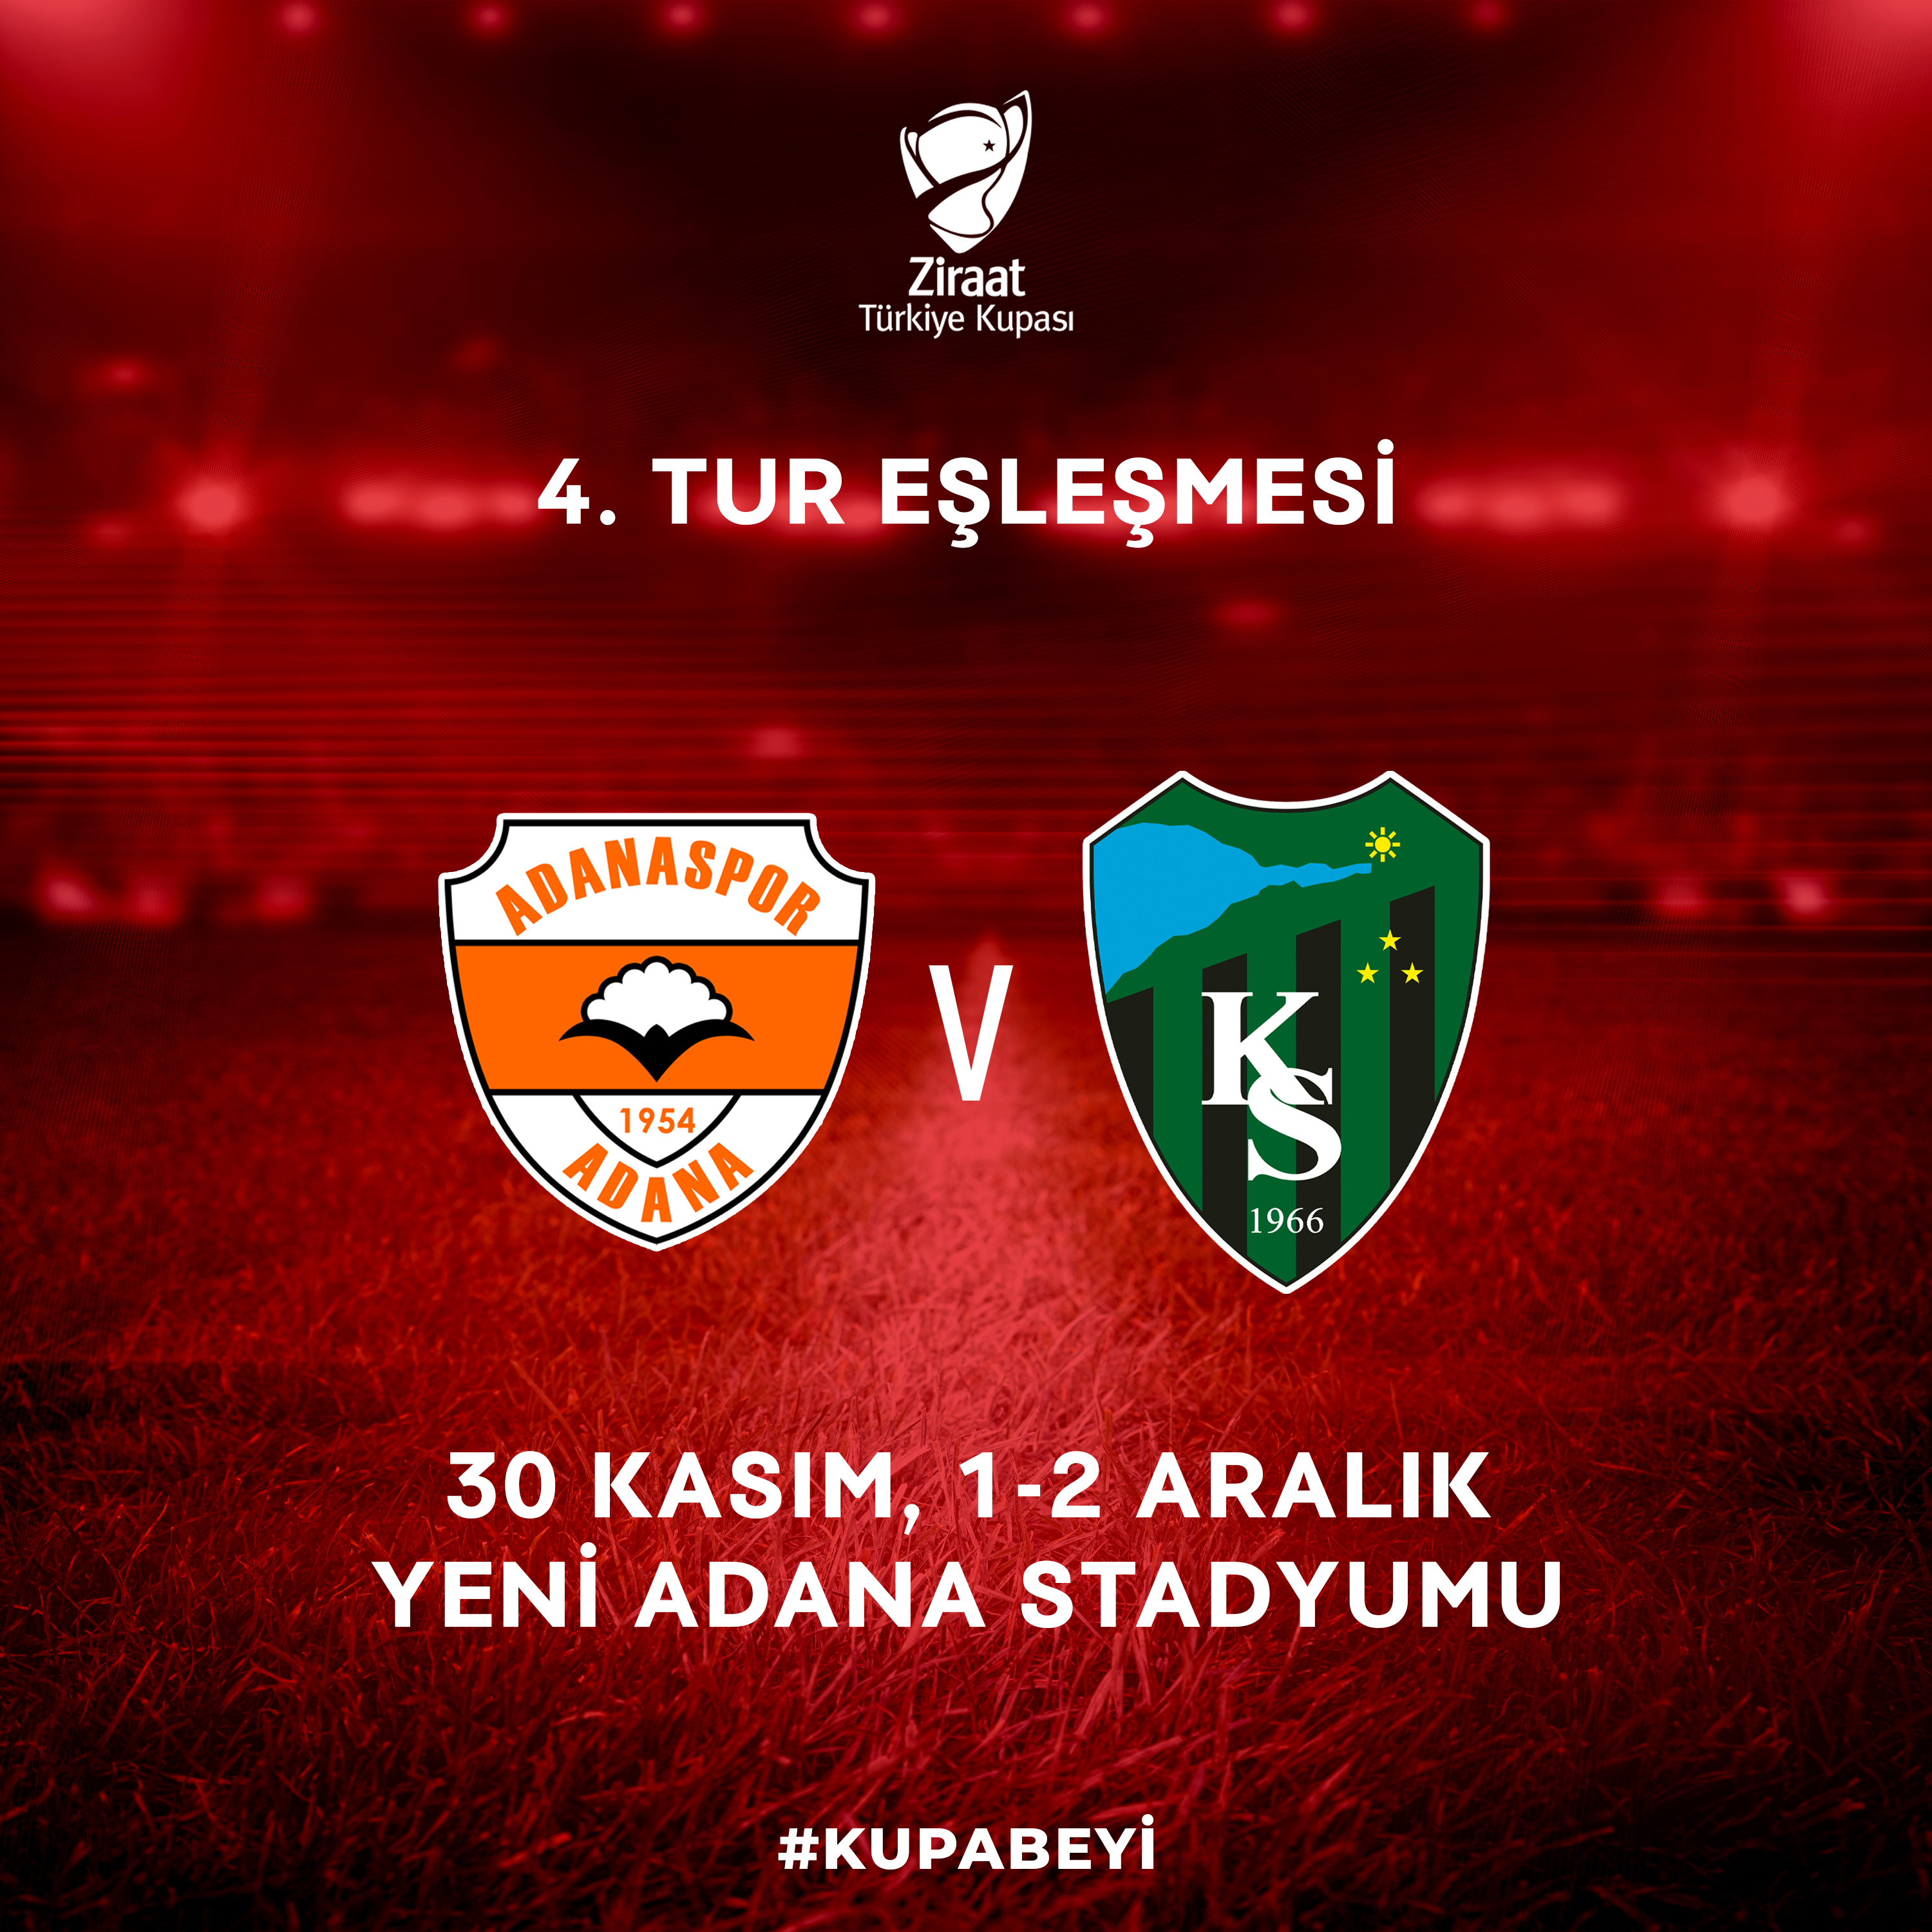 Ziraat Türkiye Kupası 4. Eleme Turu’nda Rakibimiz Adanaspor A.Ş